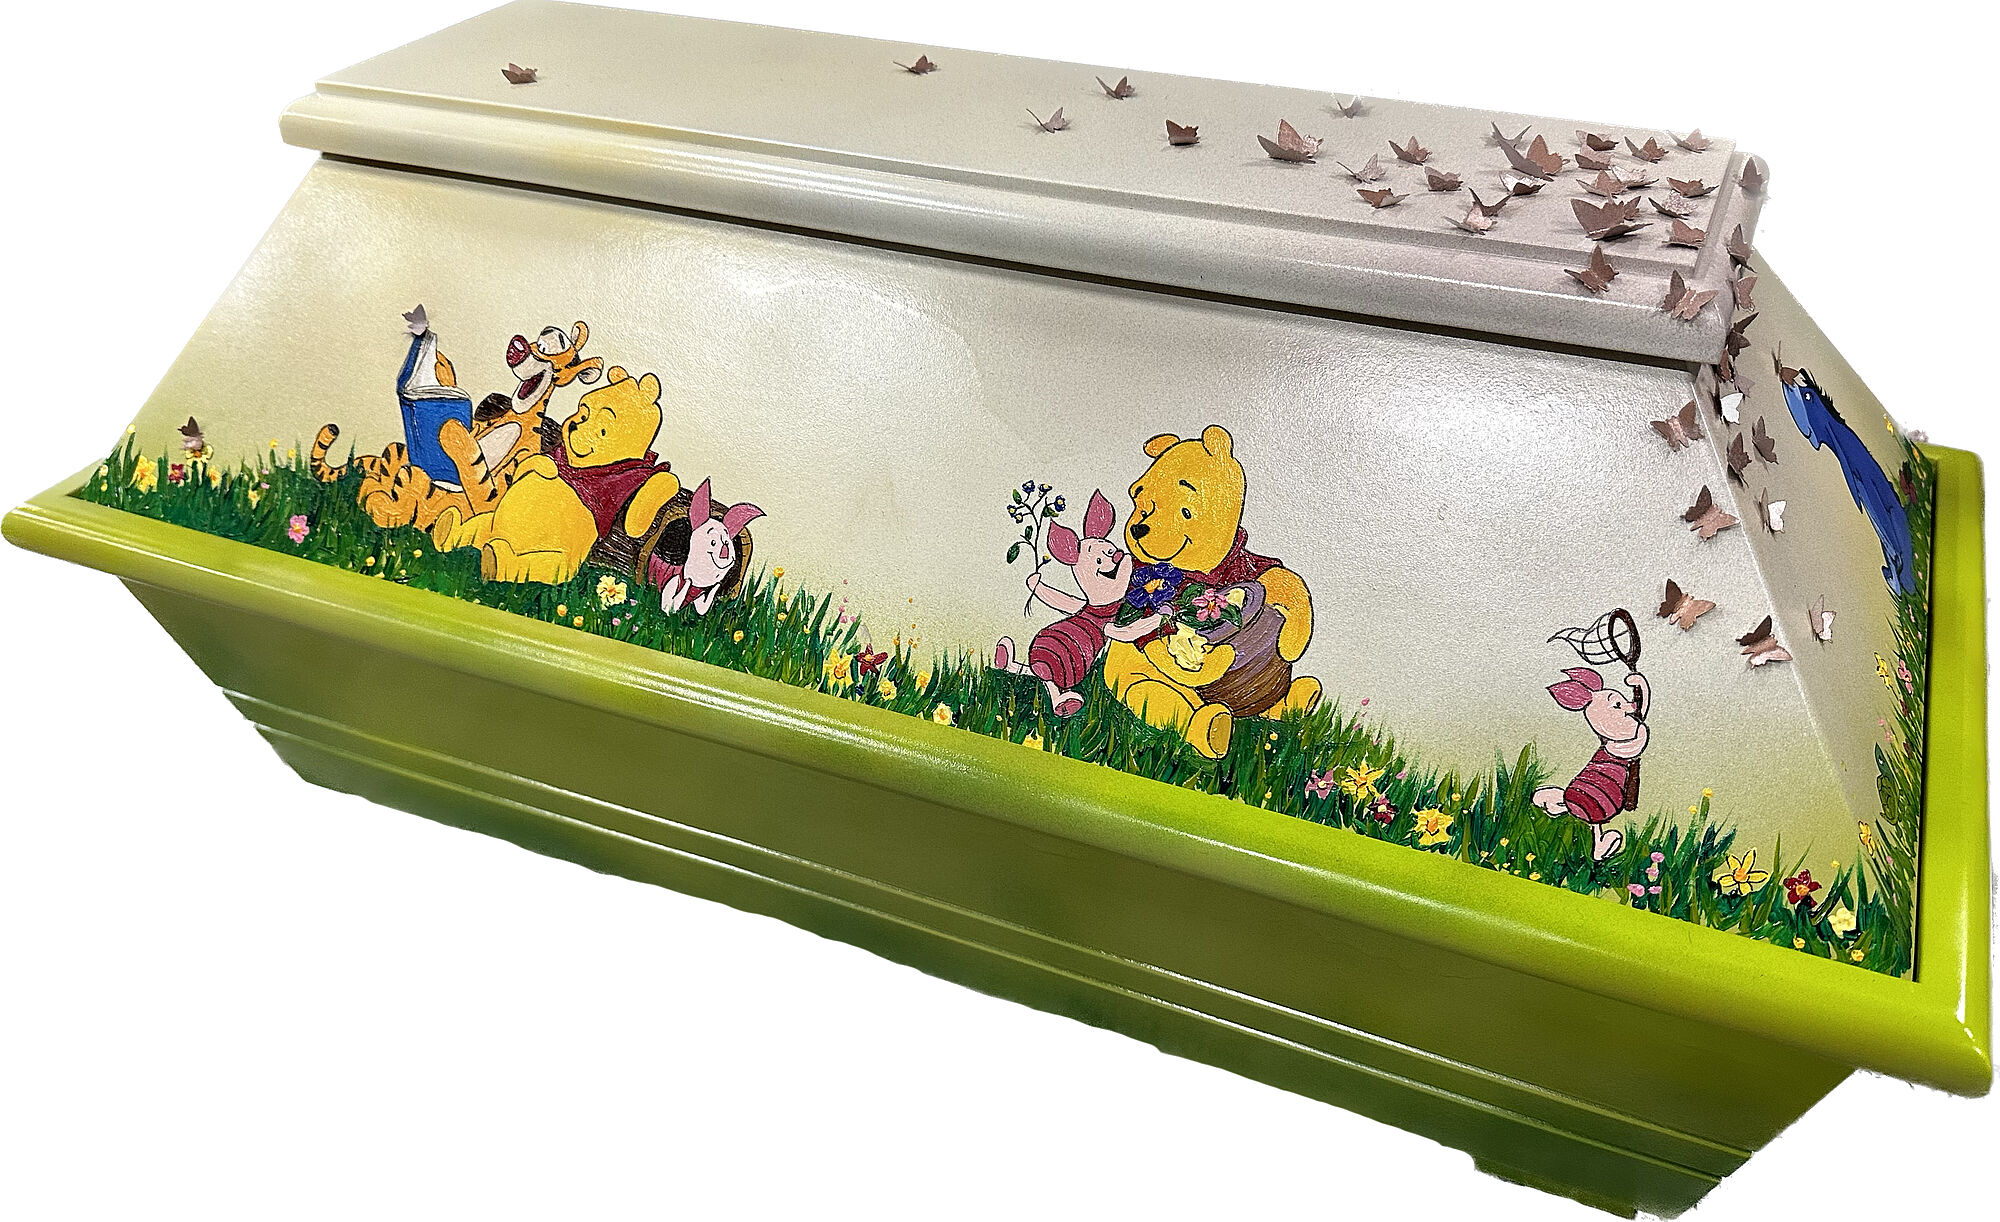 Kindersarg im handgemalten Winnie Pooh Design